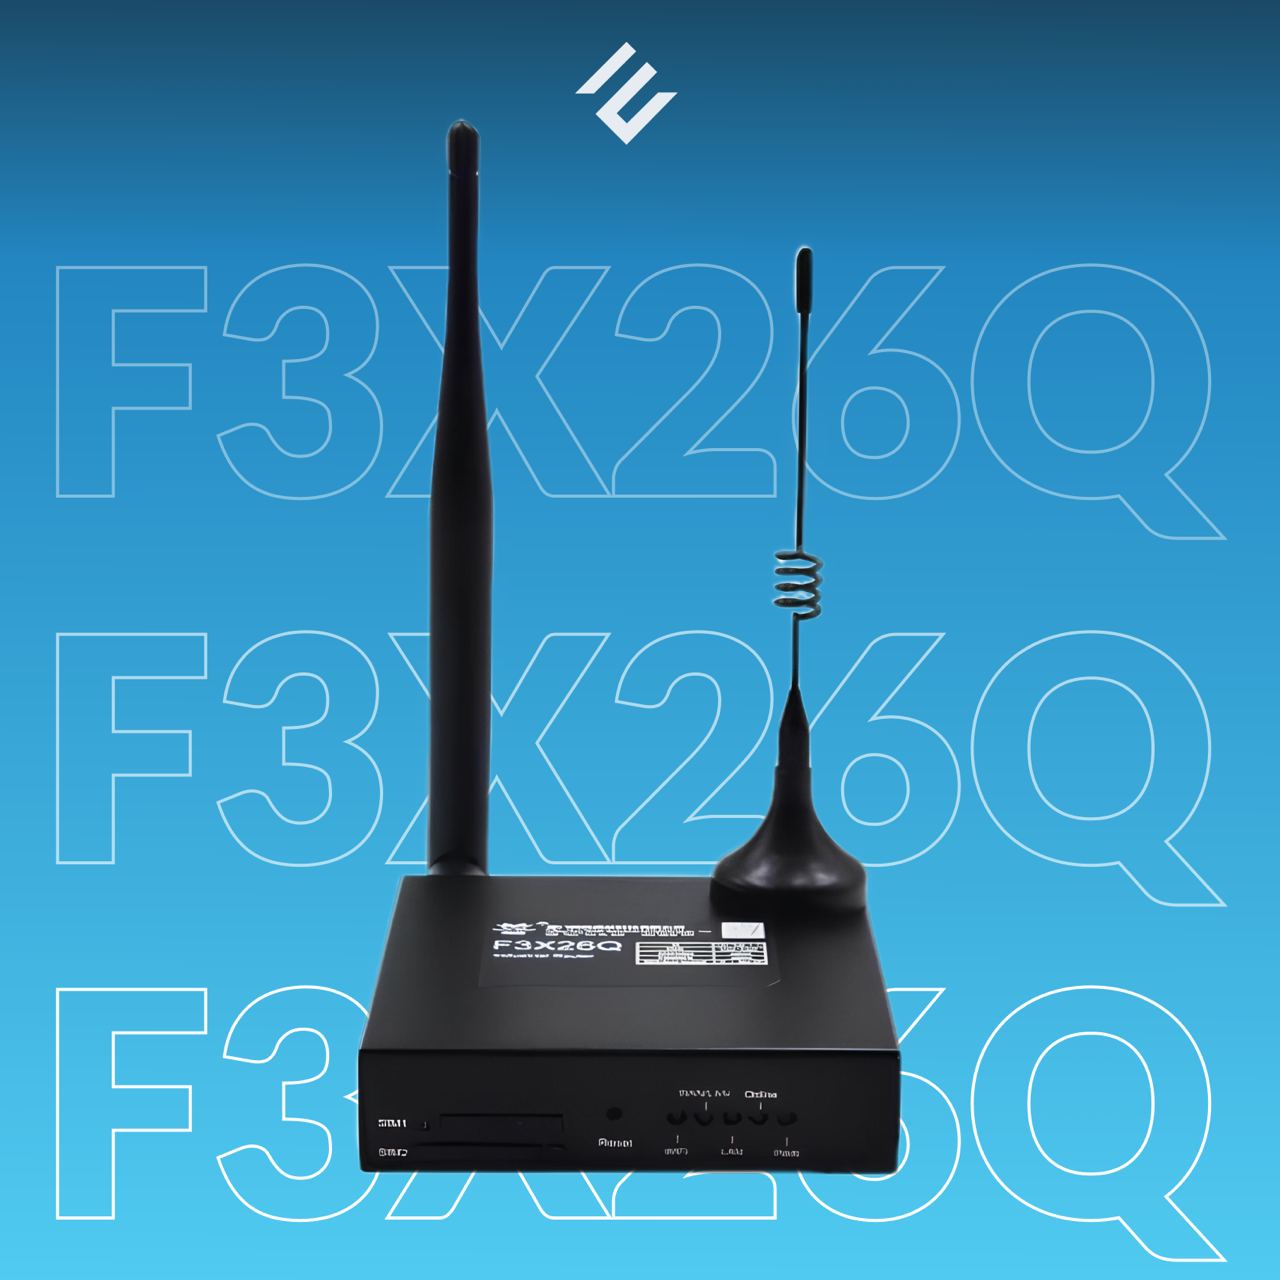 Промышленный LTE-роутер F3X26Q от Four-Faith купить в ЕвроМобайл